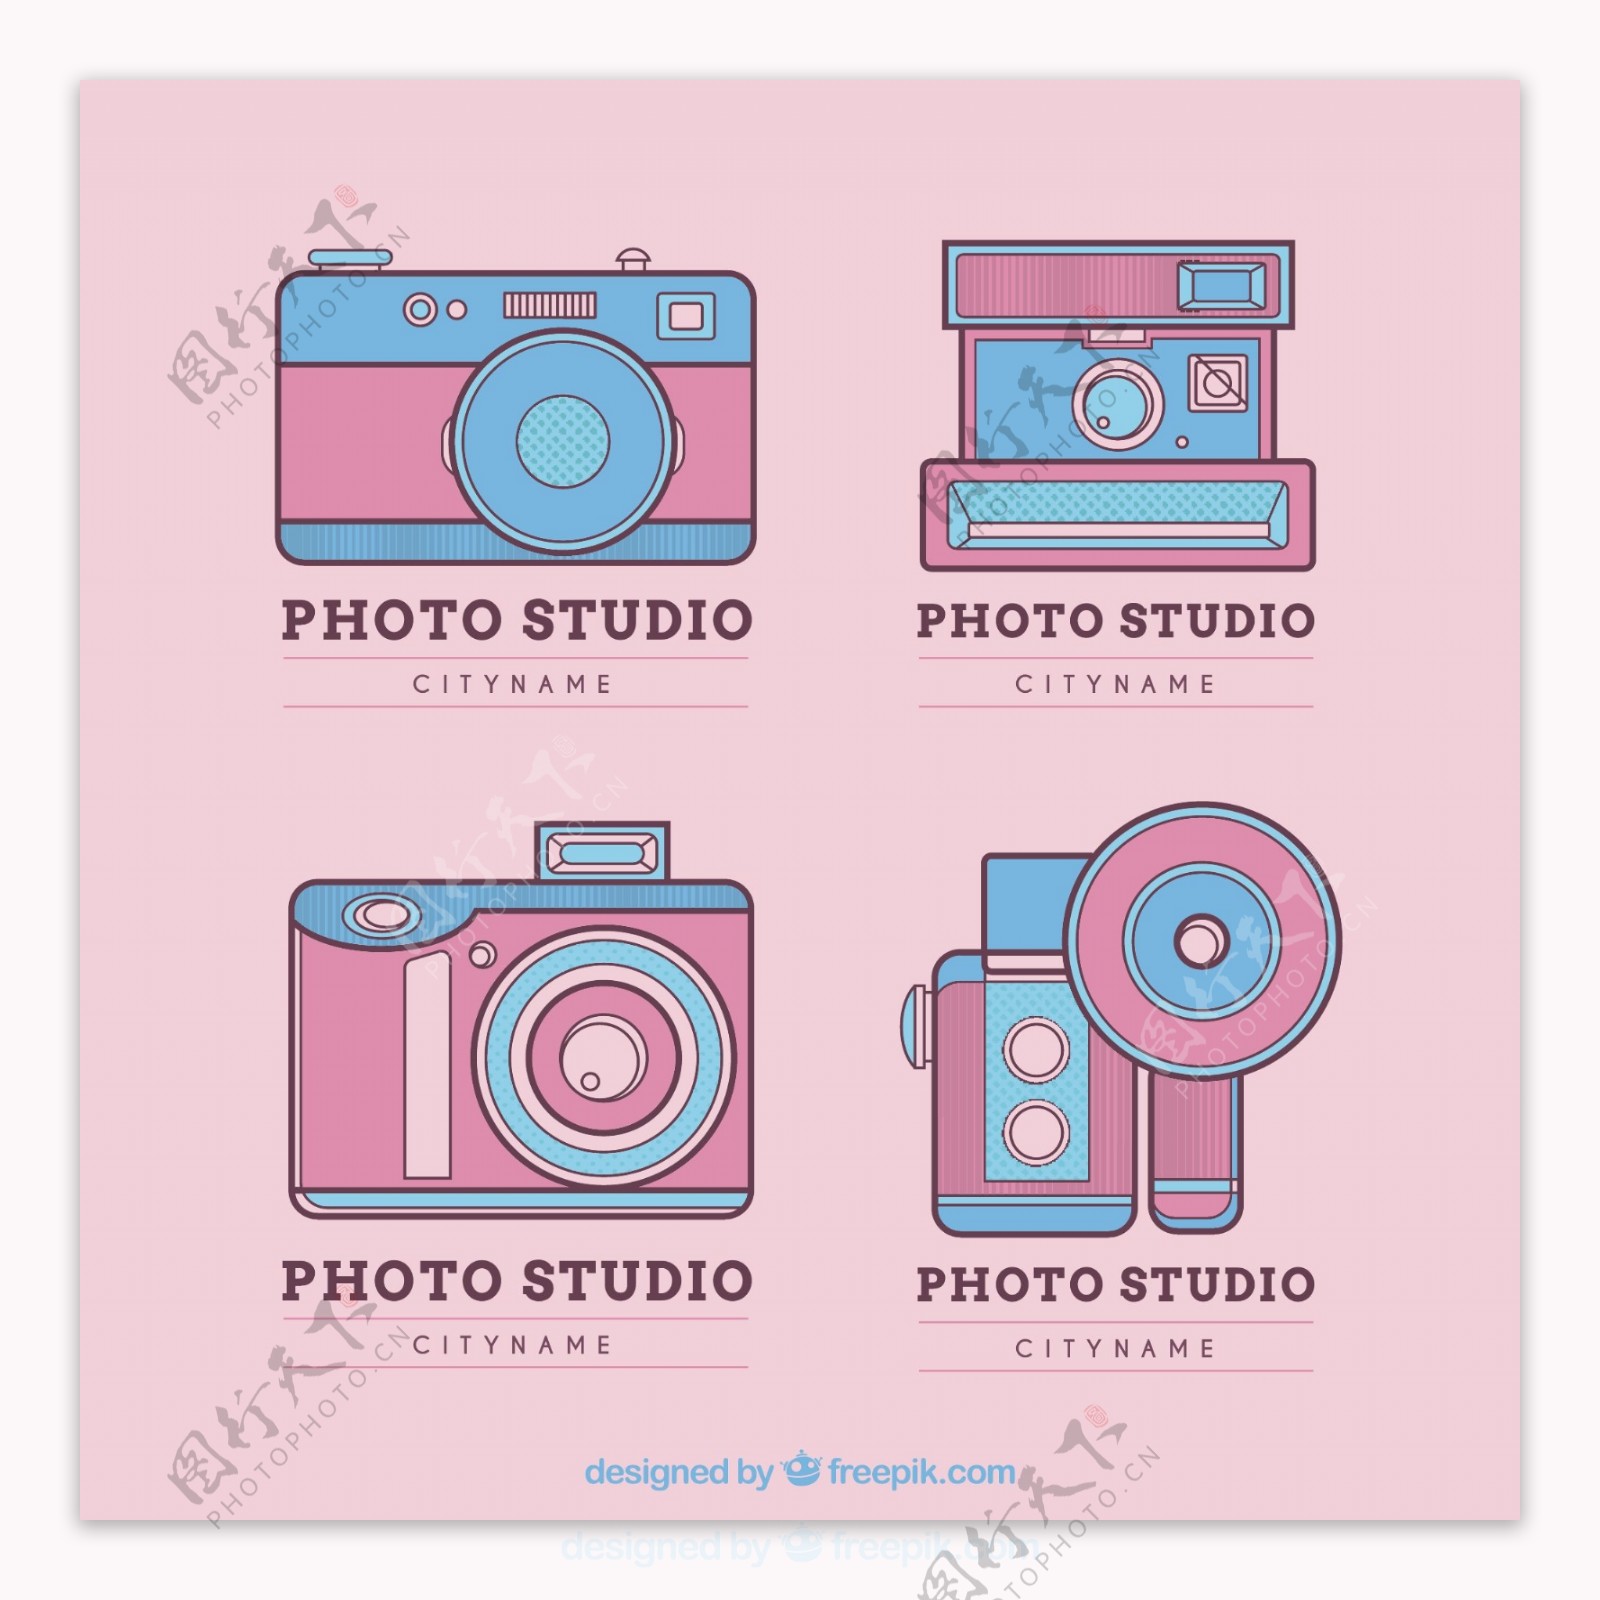 可爱的粉红照片工作室标志